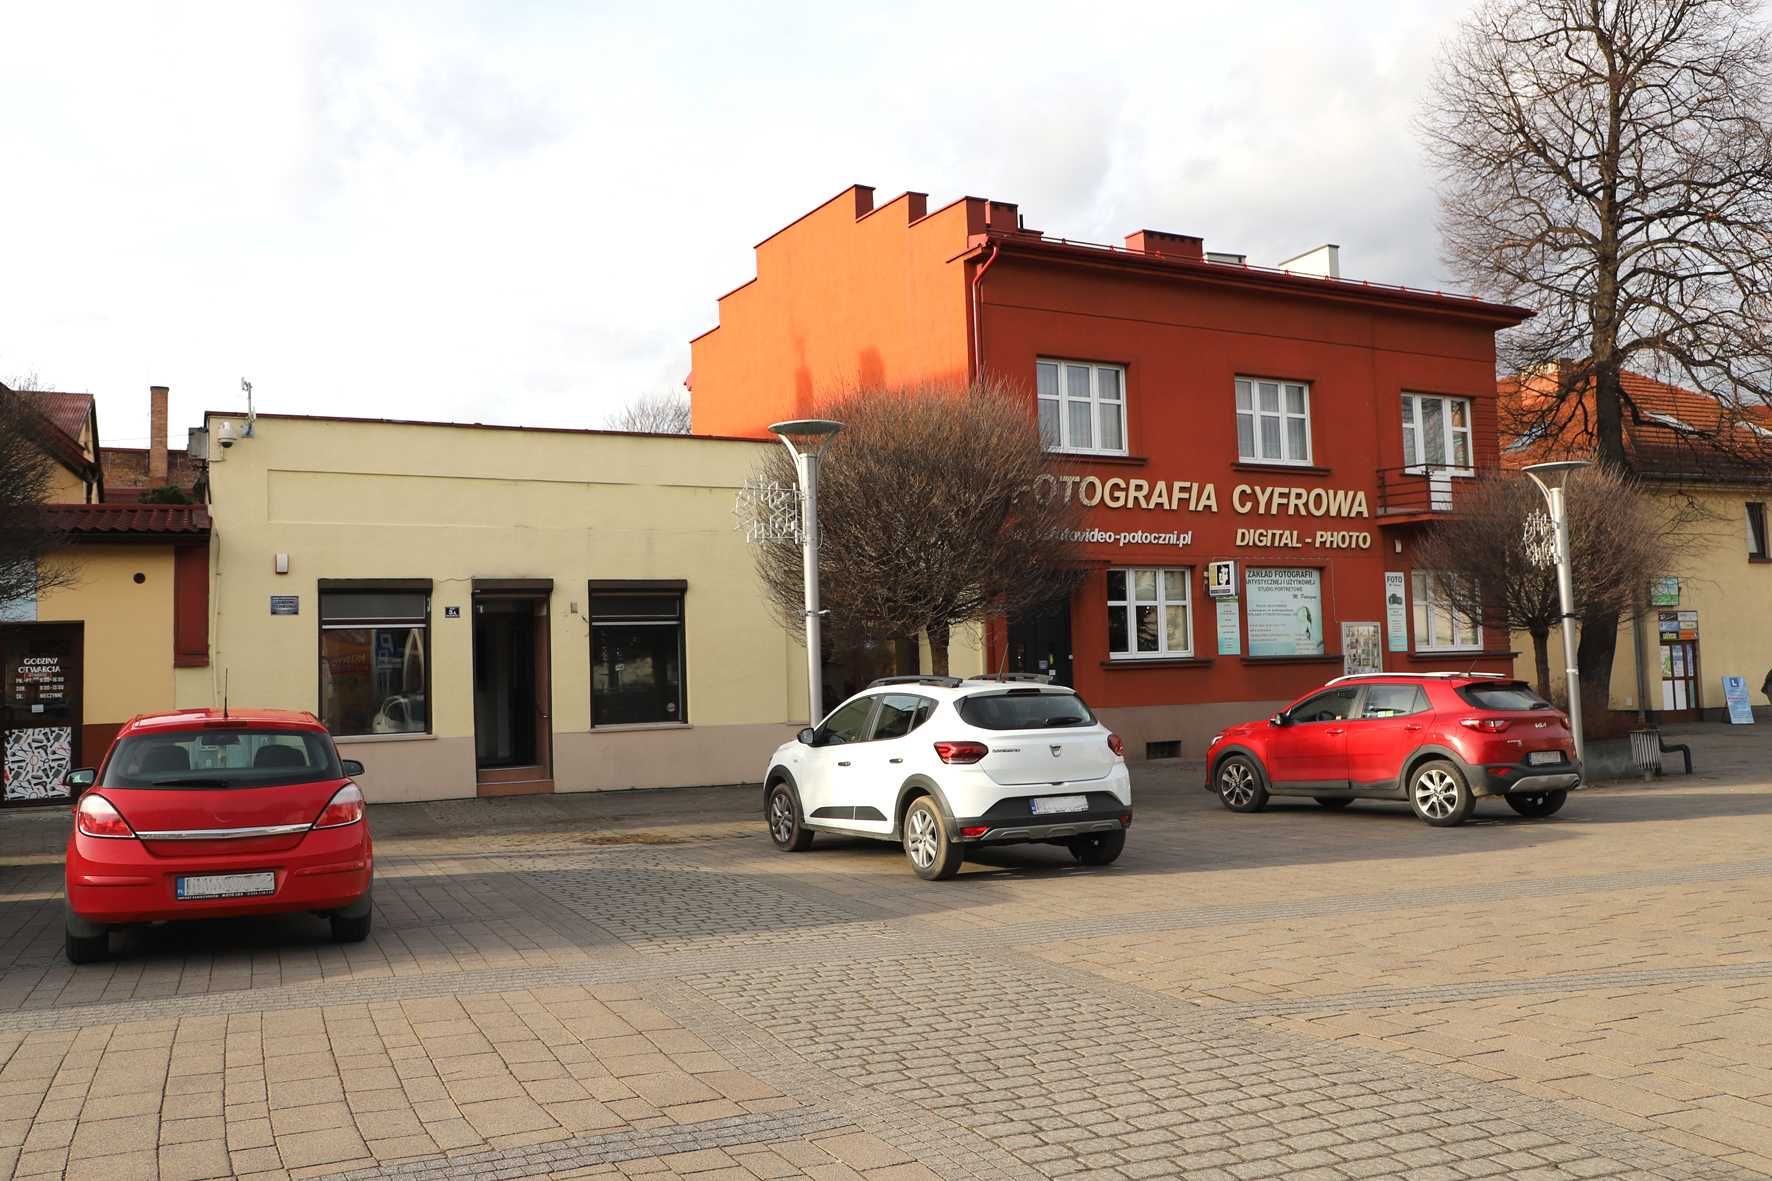 WYNAJMĘ lokale użytkowe w centrum Andrychowa